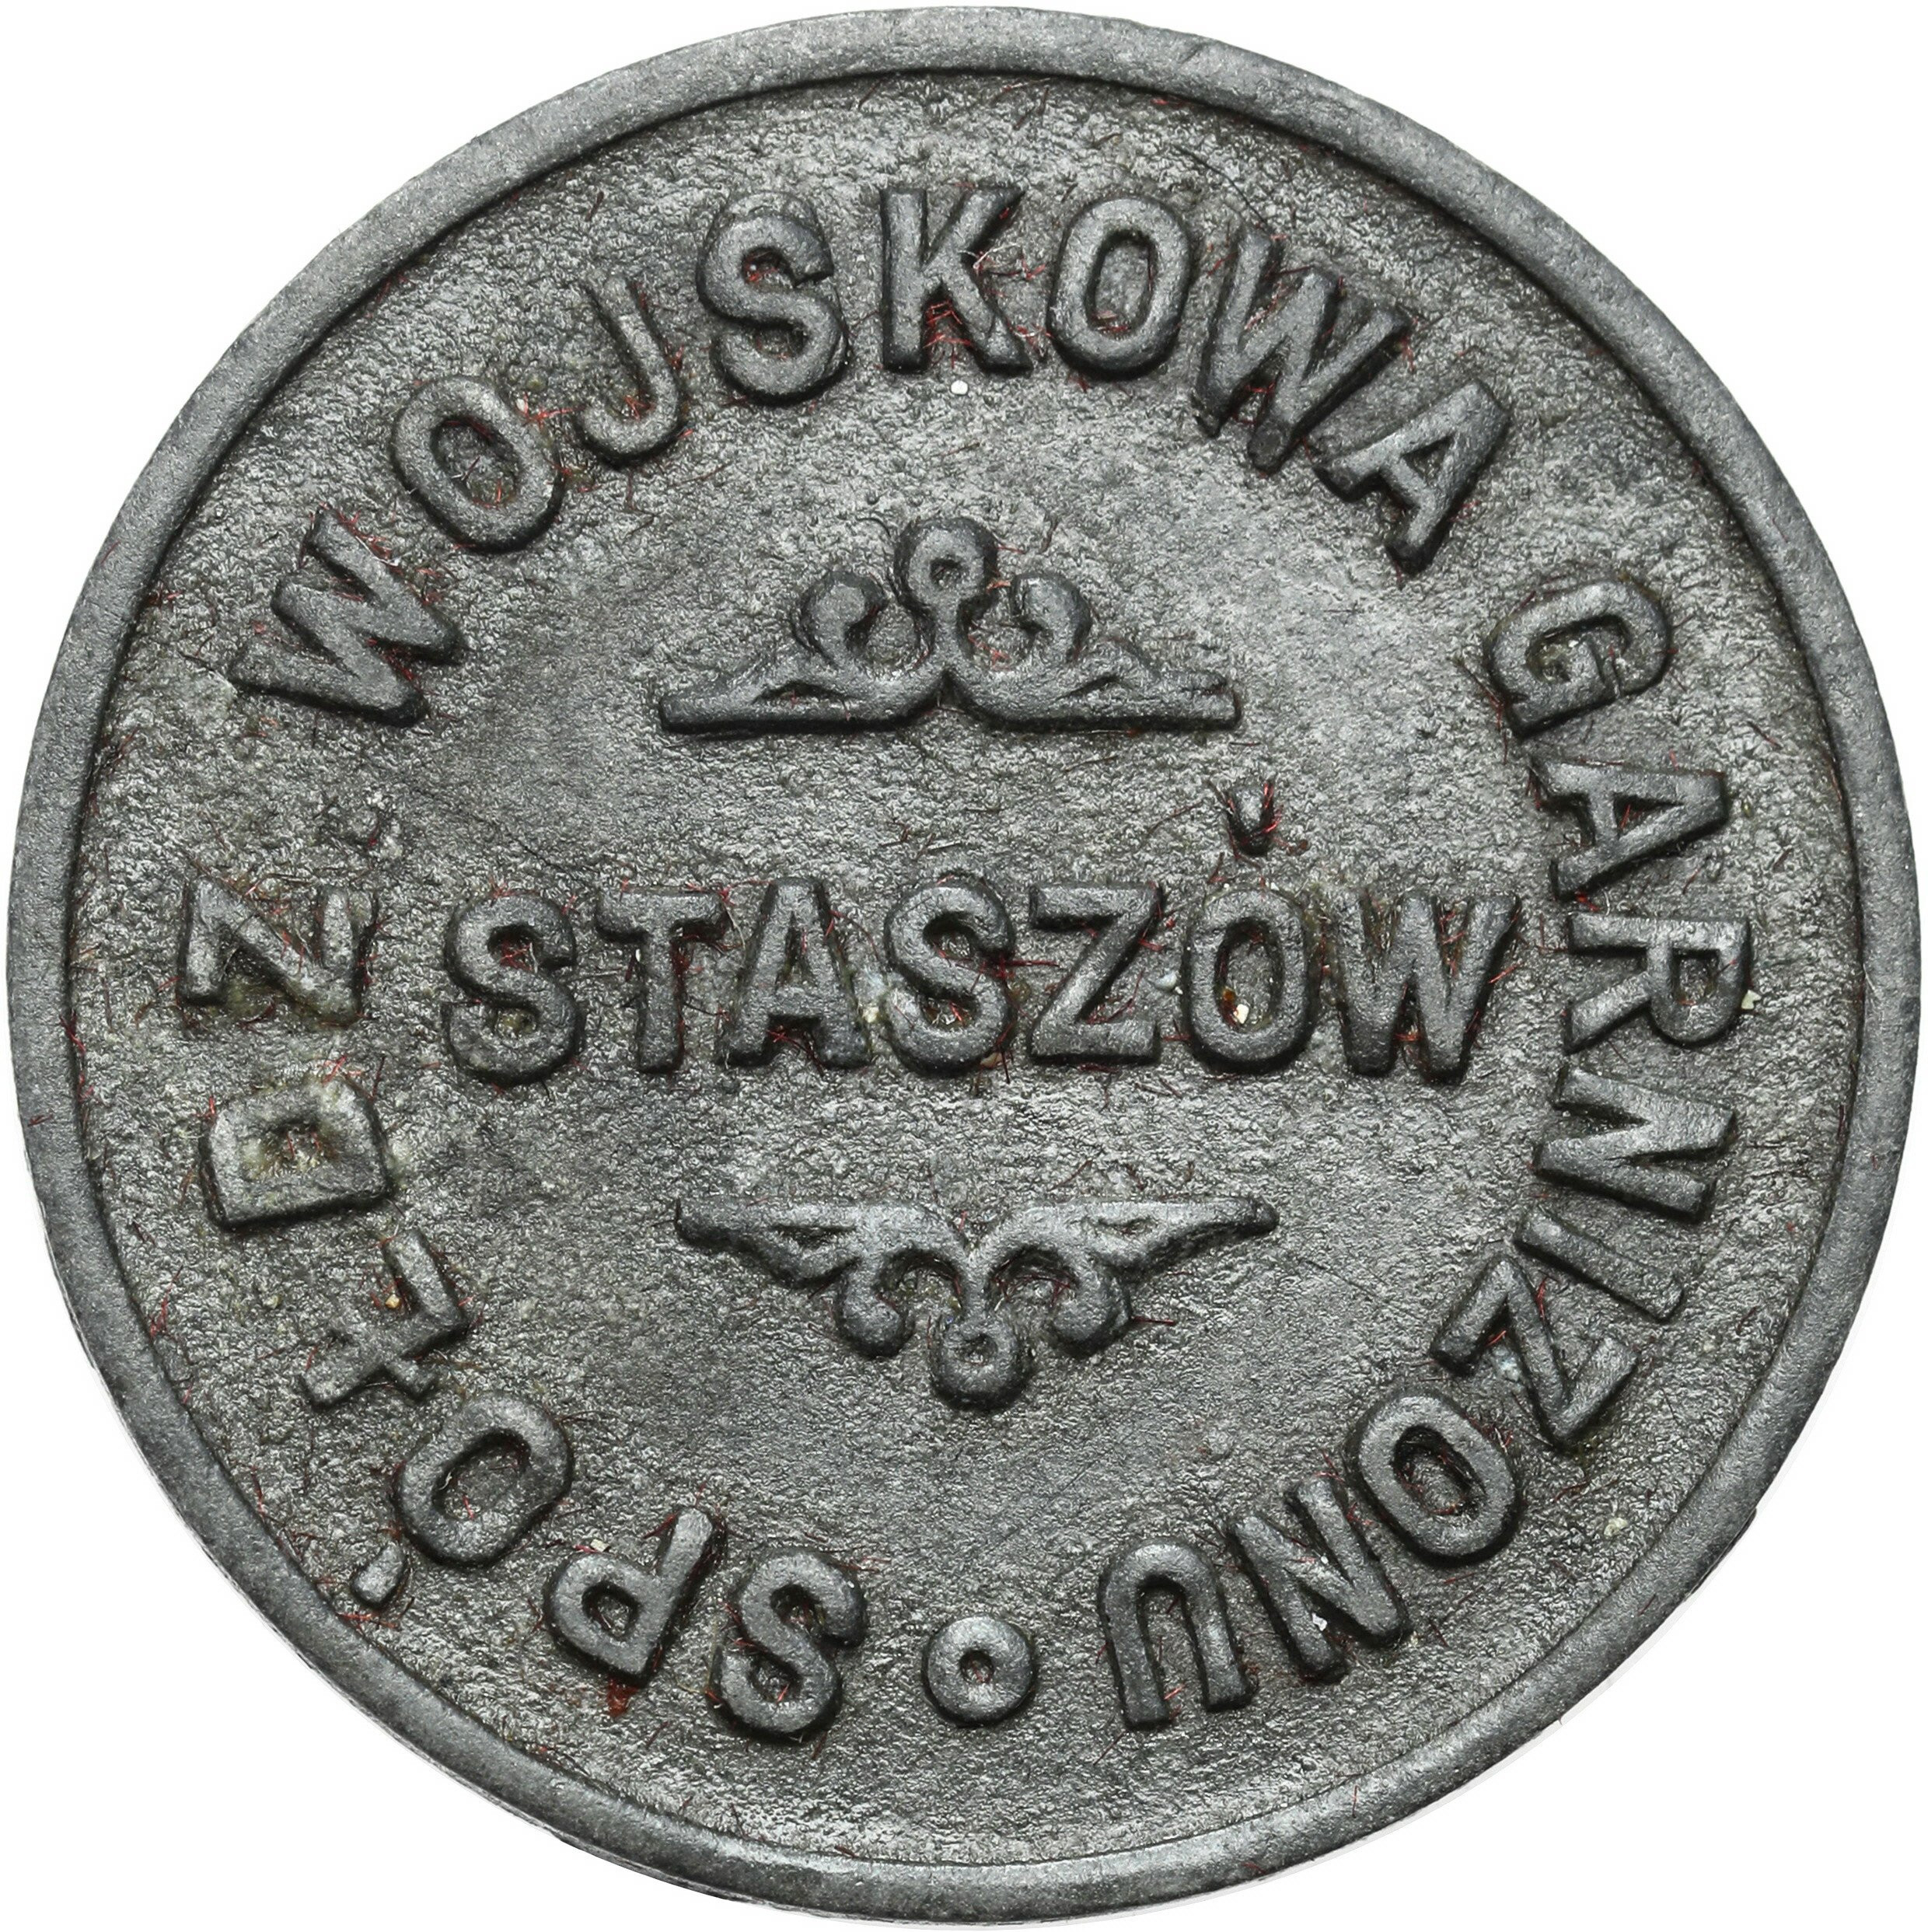 Staszów - 50 groszy Spółdzielnia Wojskowa Garnizonu Staszów